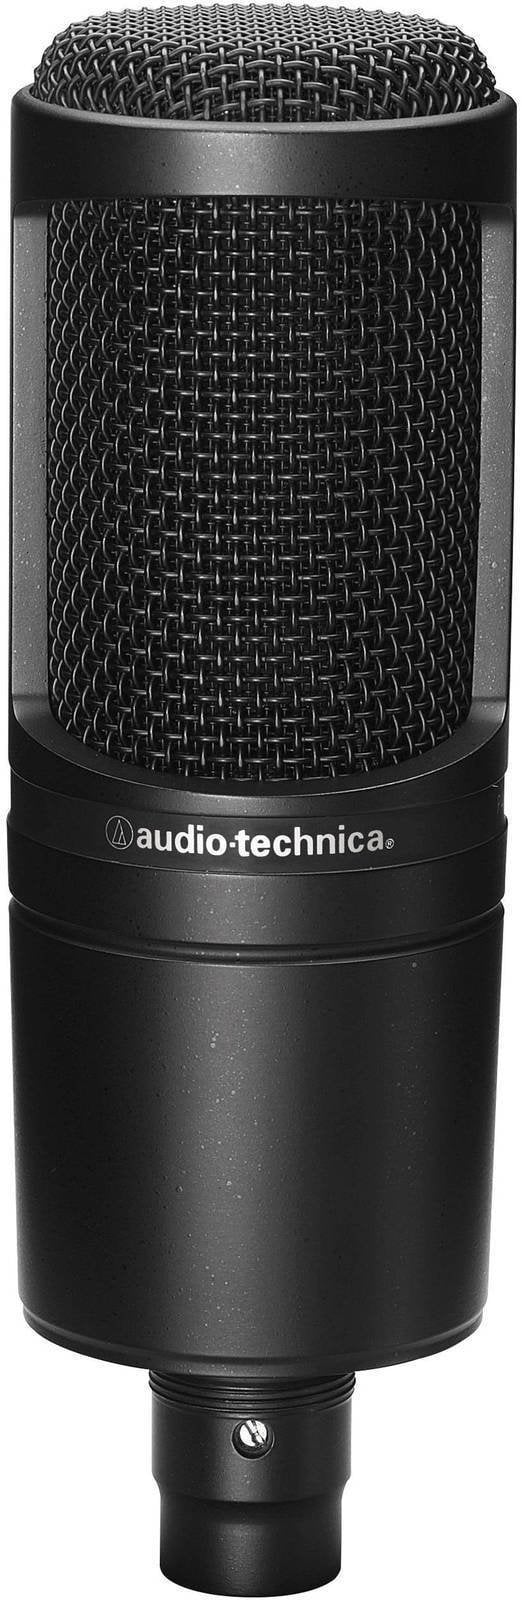 Microphone à condensateur pour studio Audio-Technica AT2020 Microphone à condensateur pour studio